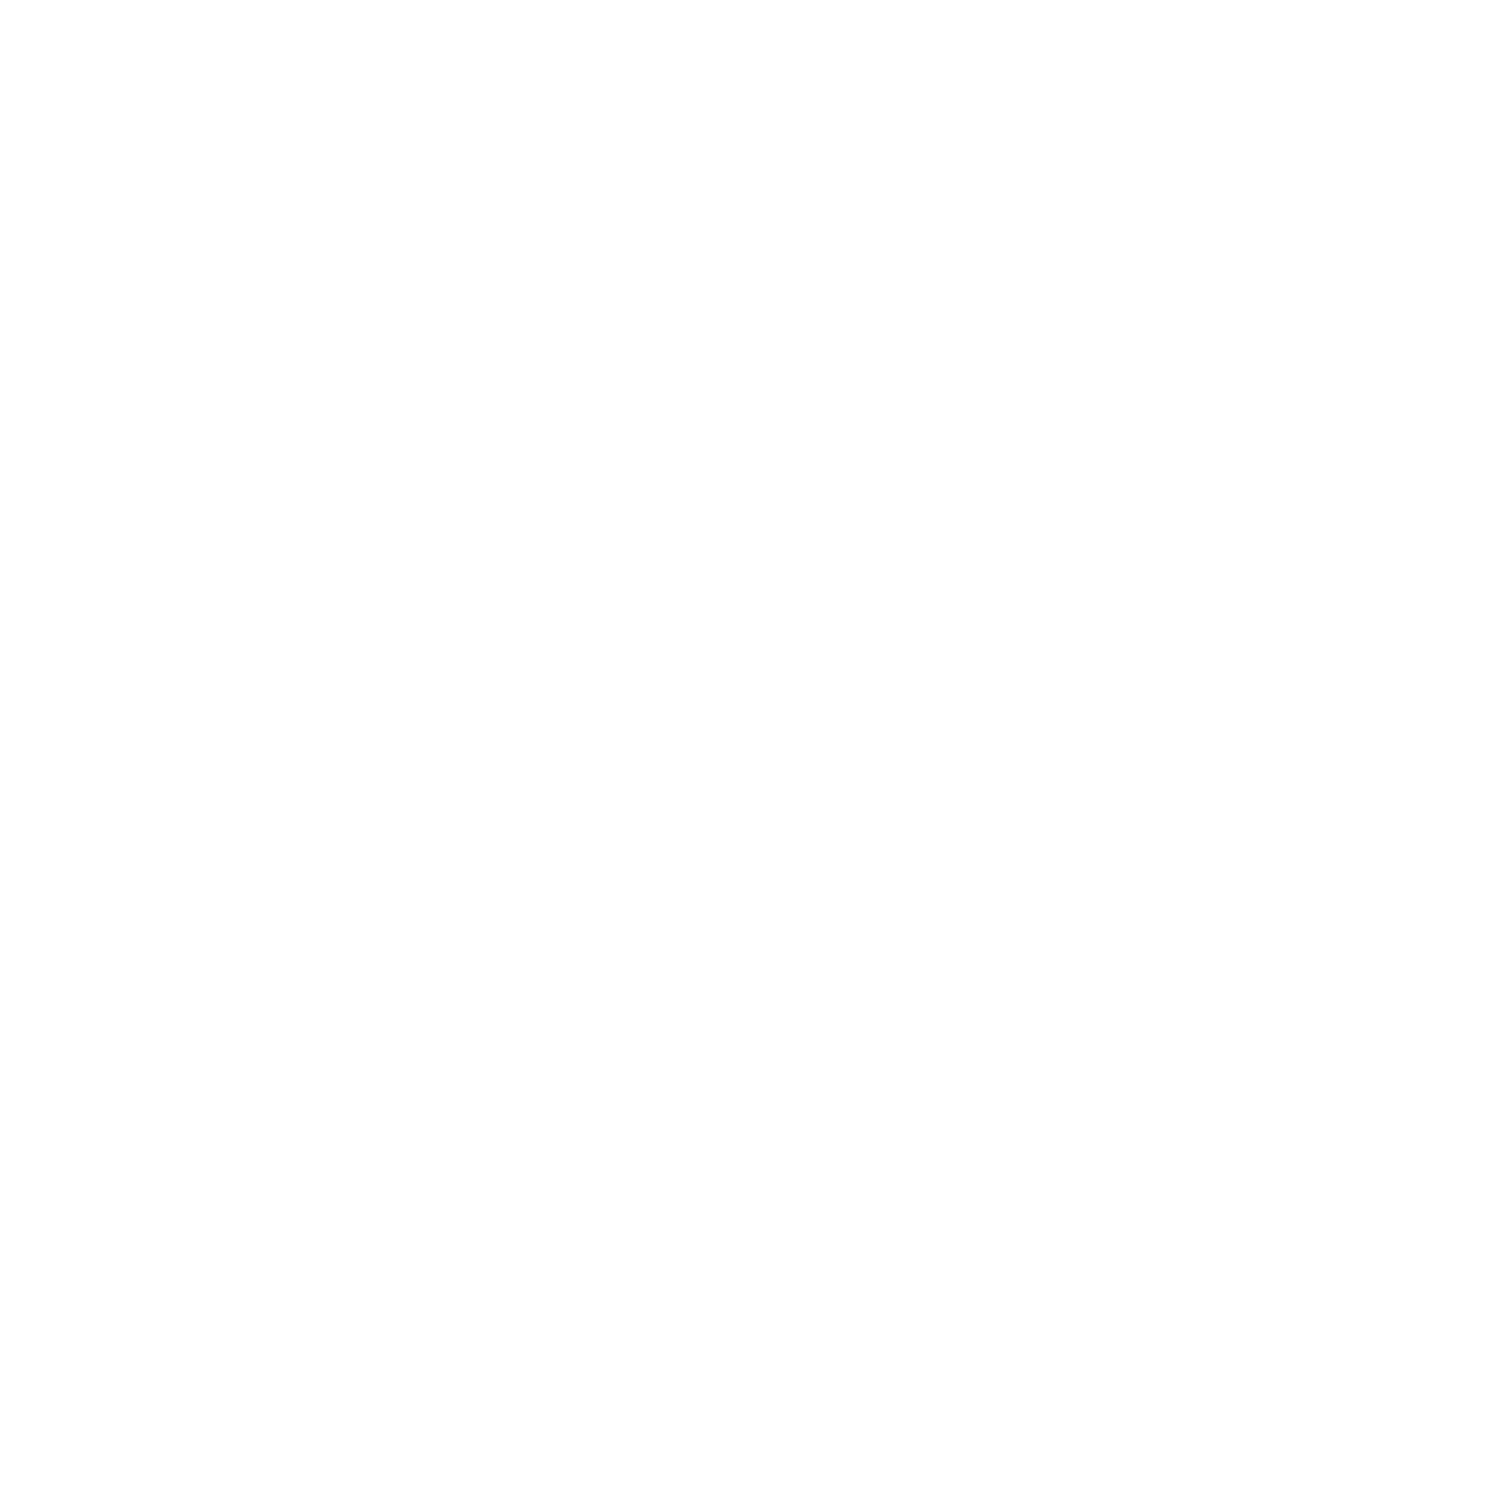 Elardo Events